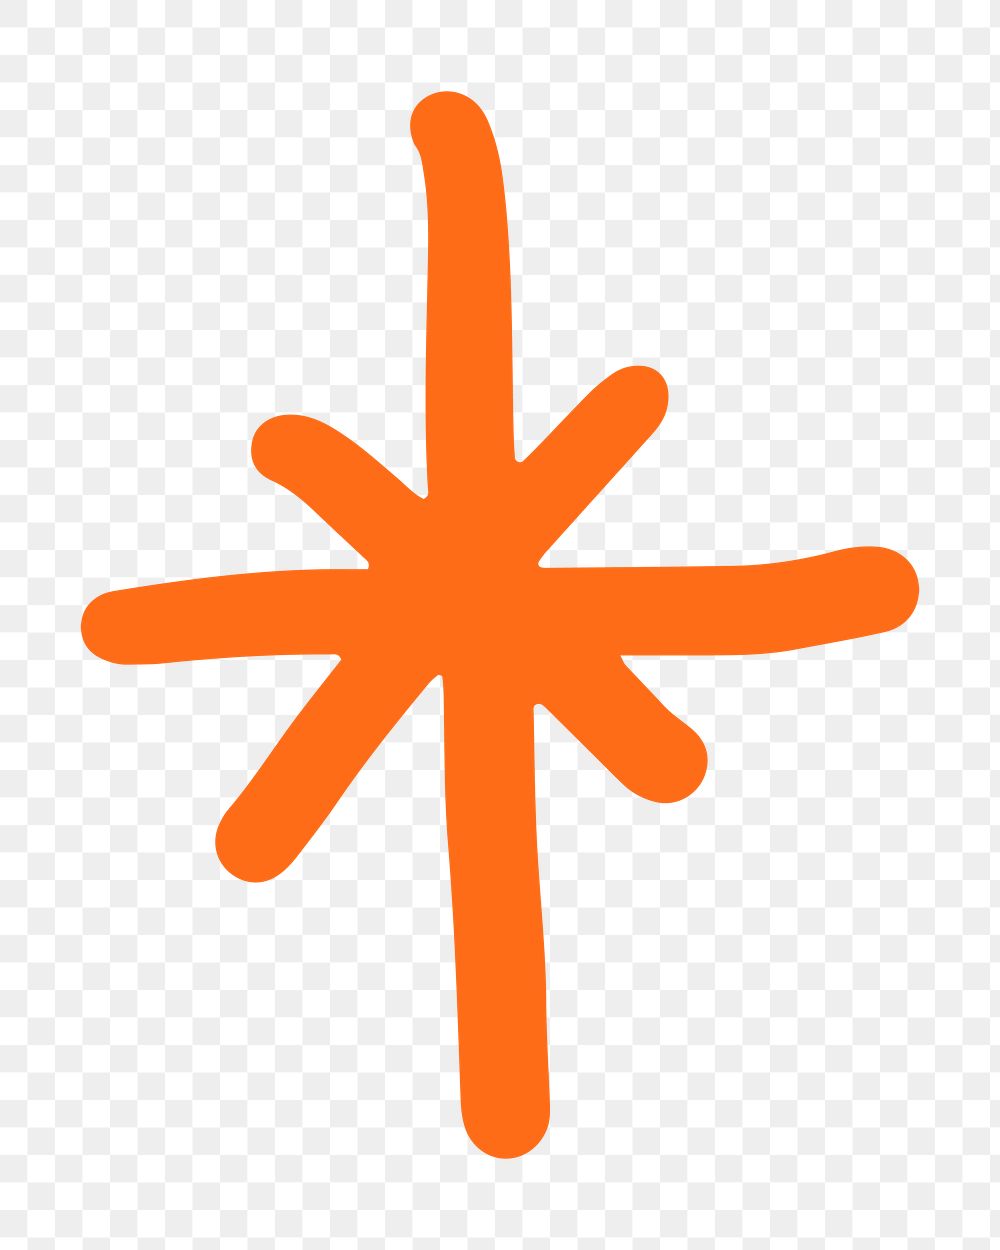 Sparkle doodle png sticker, orange design, transparent background